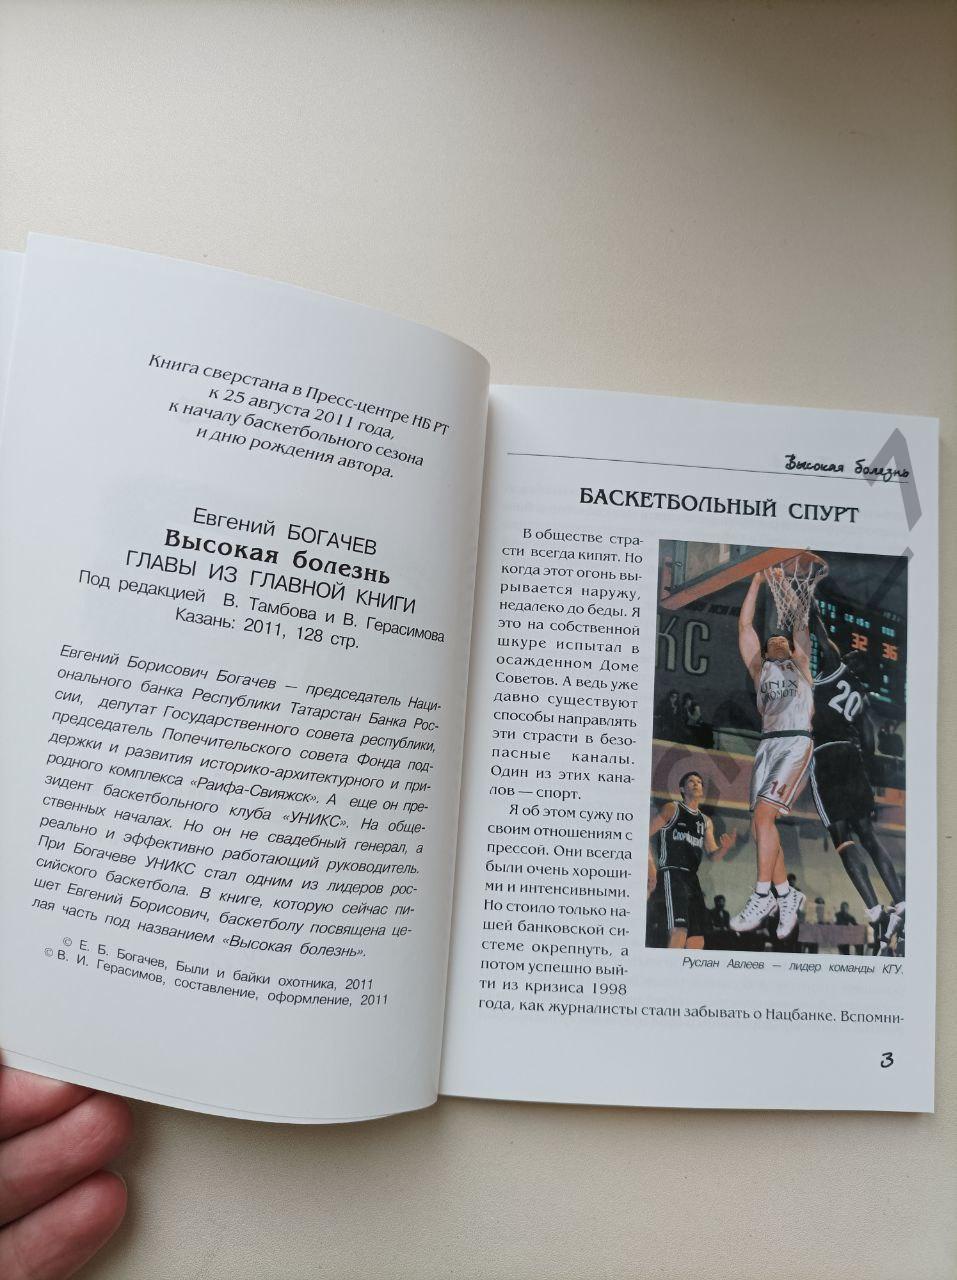 Баскетбол. Высокая болезнь (Е. Богачёв, 2011) 3